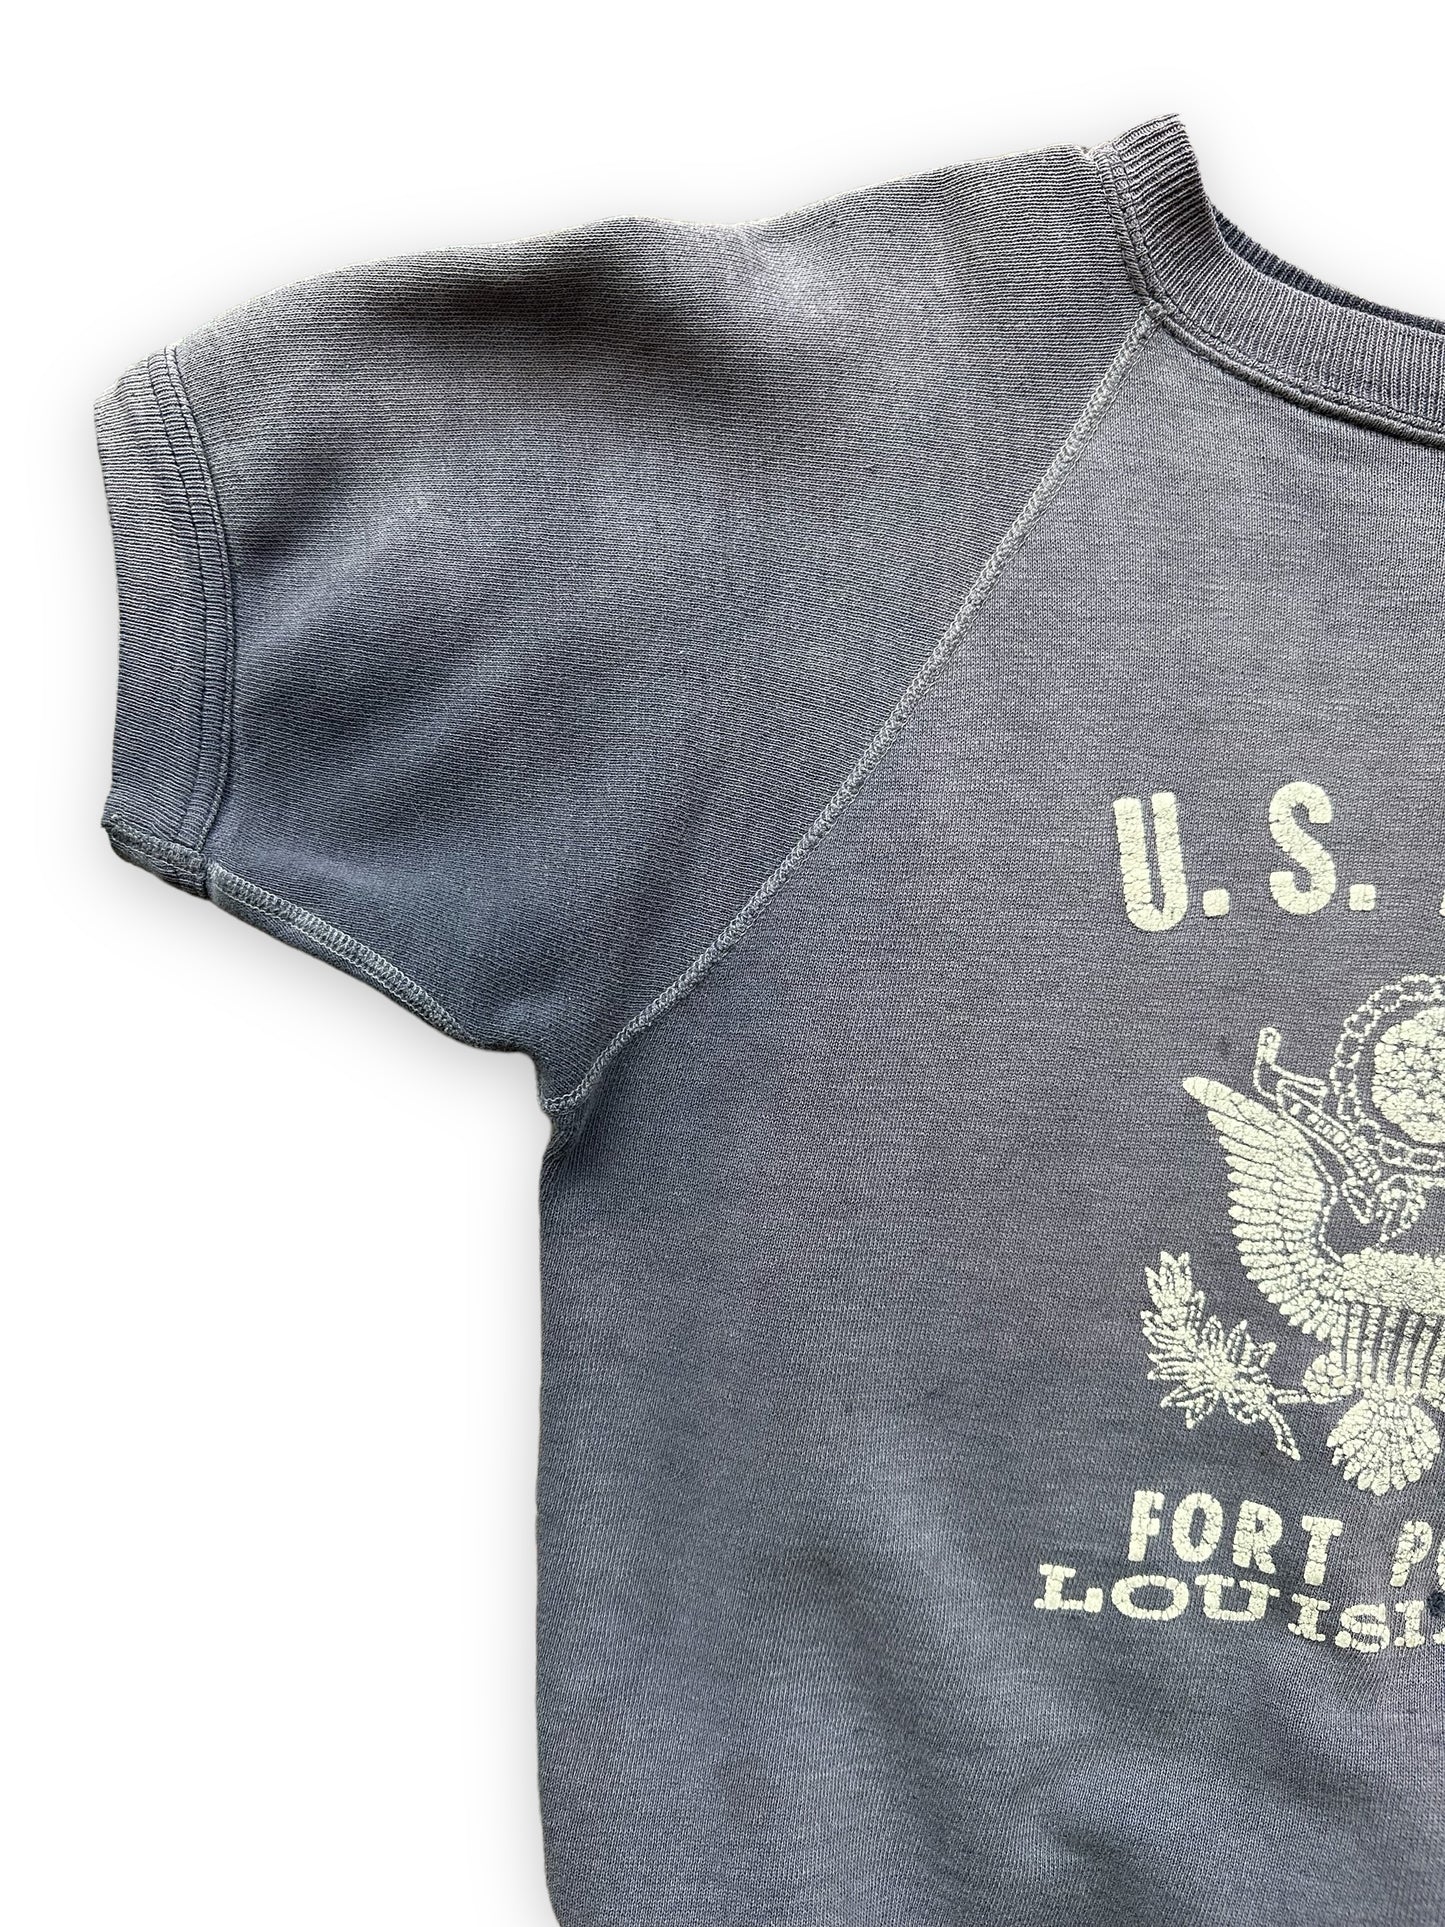 Right Sleeve View on Vintage US Army Fort Polk Short Sleeve Sweatshirt SZ M | Vintage Crewneck Sweatshirts | Barn Owl Vintage Seattle